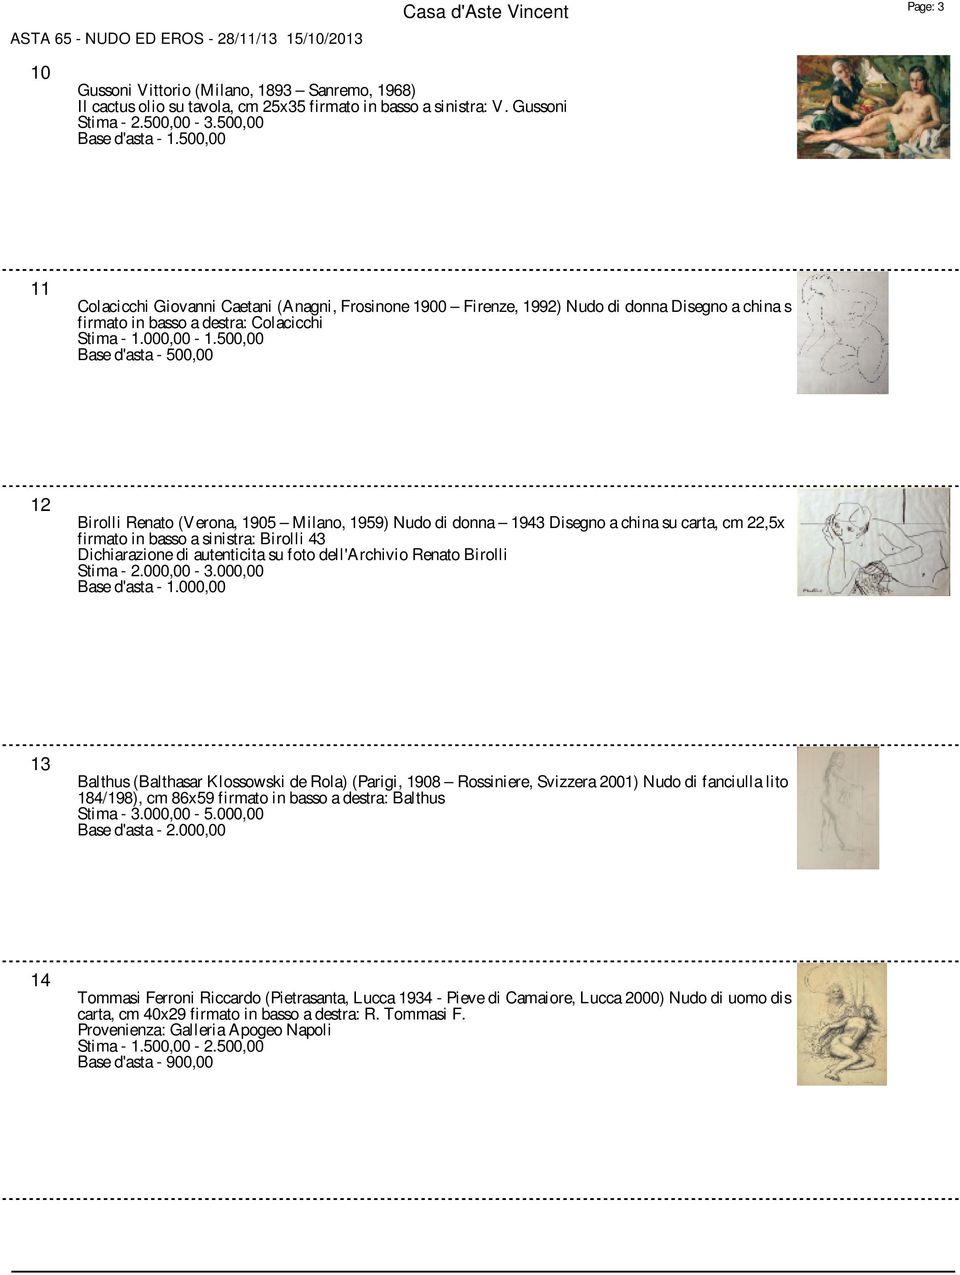 500,00 Base d'asta - 500,00 12 Birolli Renato (Verona, 1905 Milano, 1959) Nudo di donna 1943 Disegno a china su carta, cm 22,5x firmato in basso a sinistra: Birolli 43 Dichiarazione di autenticita su